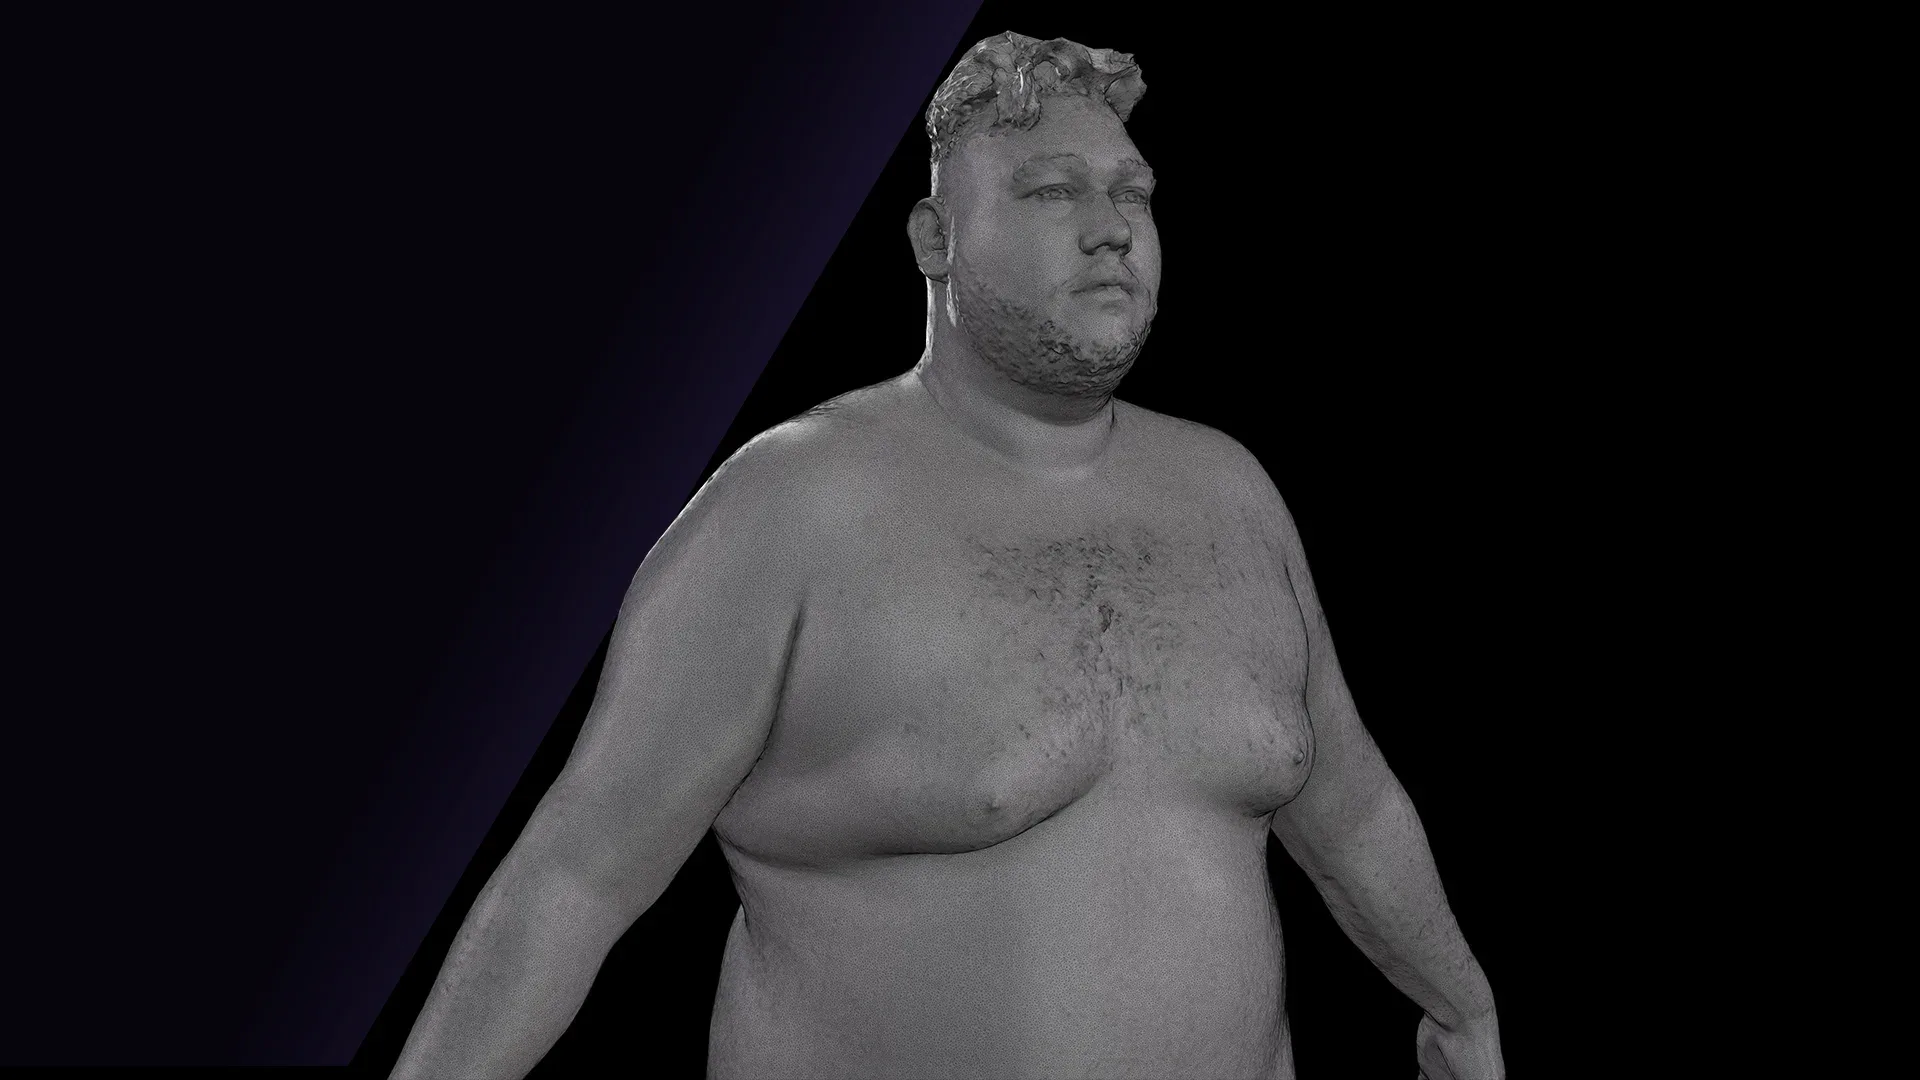 Raw A Pose Scan | 3D Model Ronaldo Biggato